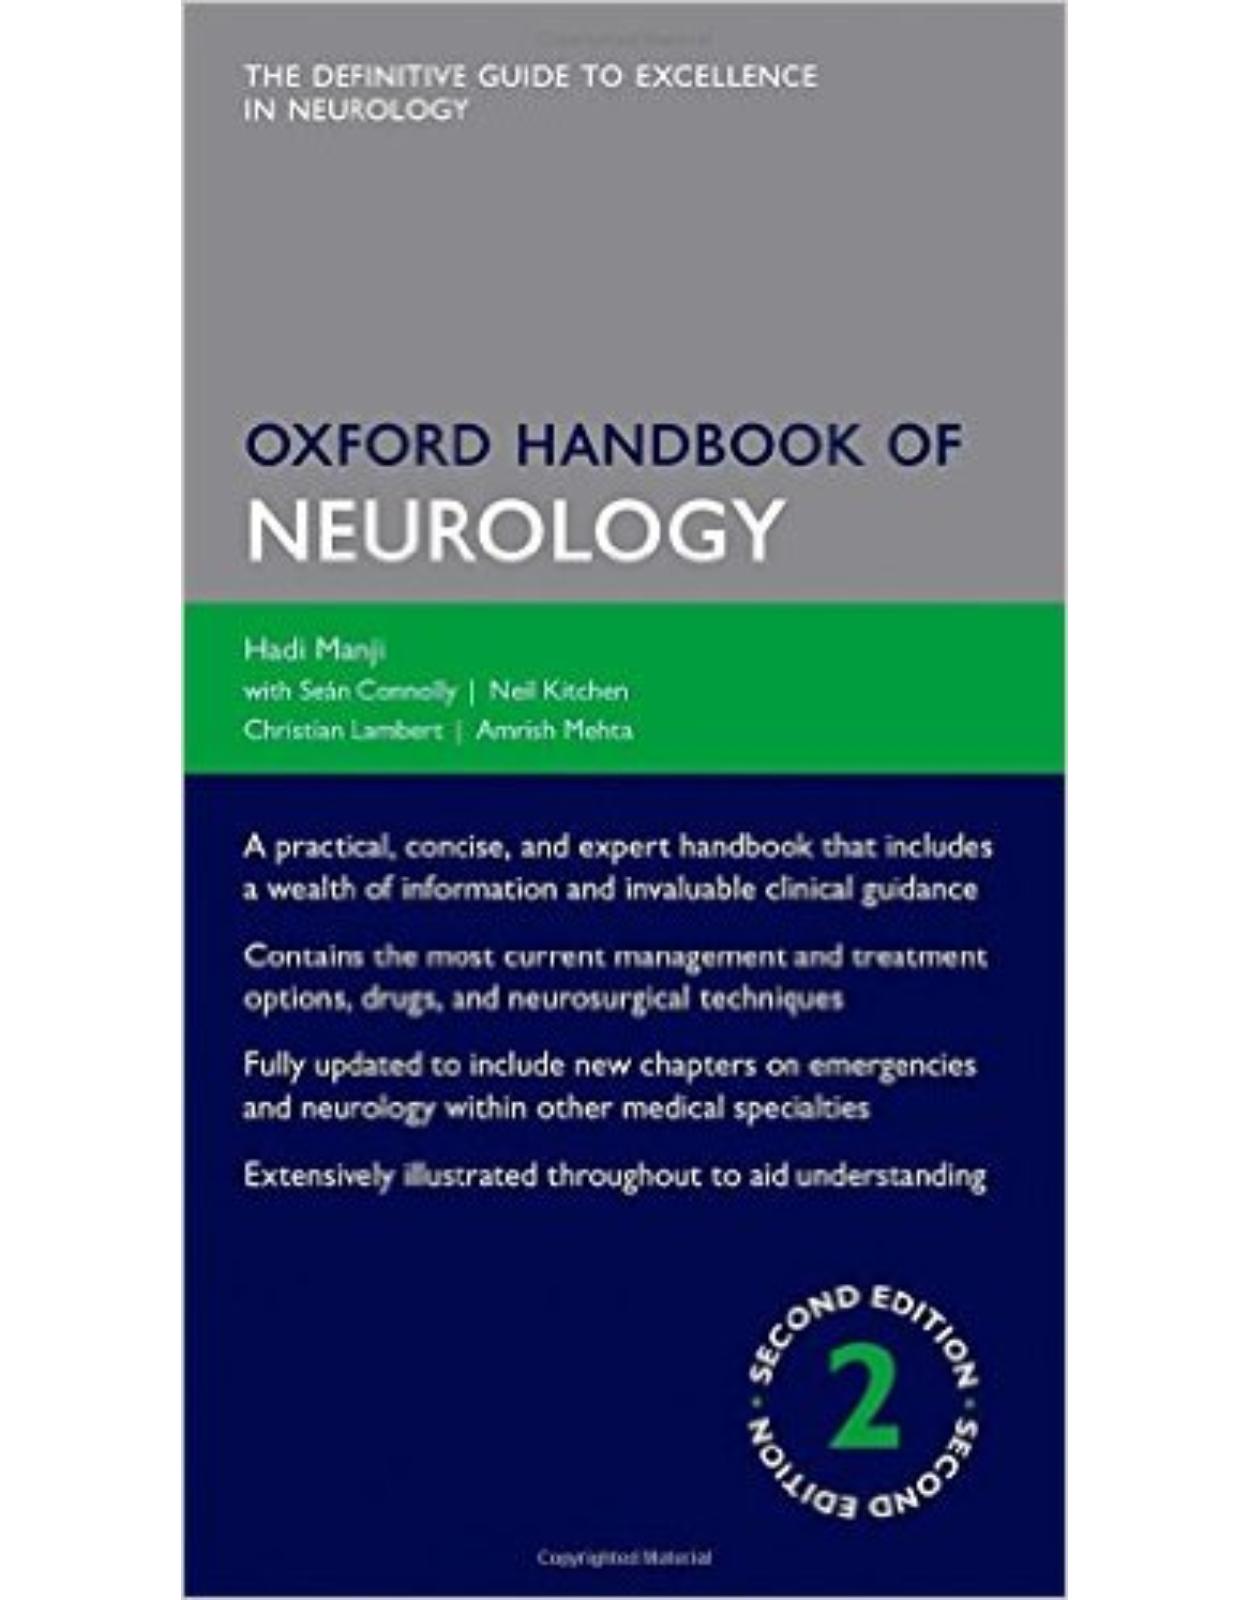 Oxford Handbook of Neurology